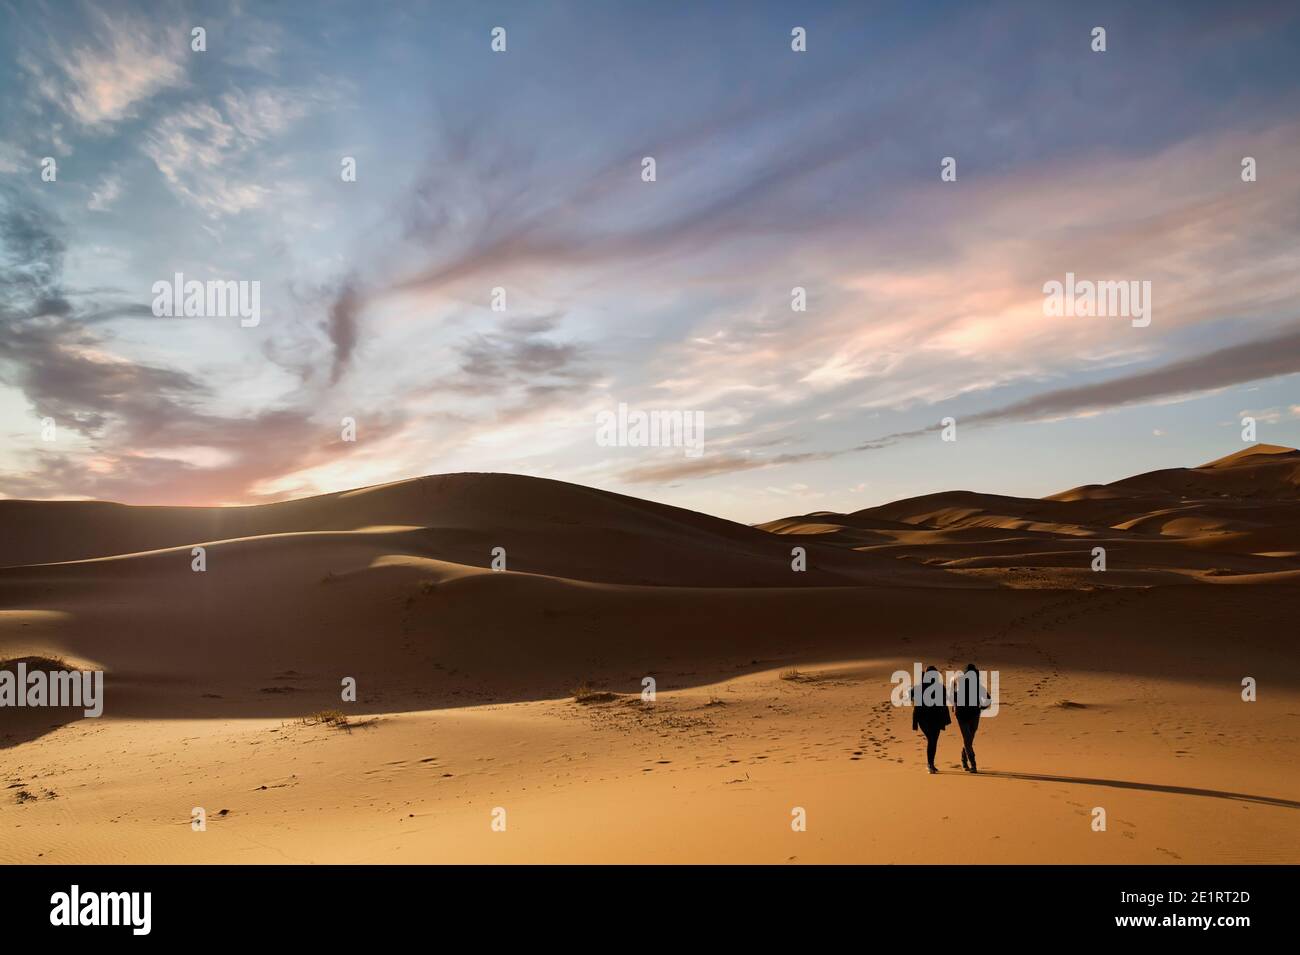 (Selektiver Fokus) Silhouette von zwei Personen, die während eines atemberaubenden Sonnenuntergangs auf den Sanddünen der Merzouga-Wüste wandern. Merzouga, Marokko. Stockfoto